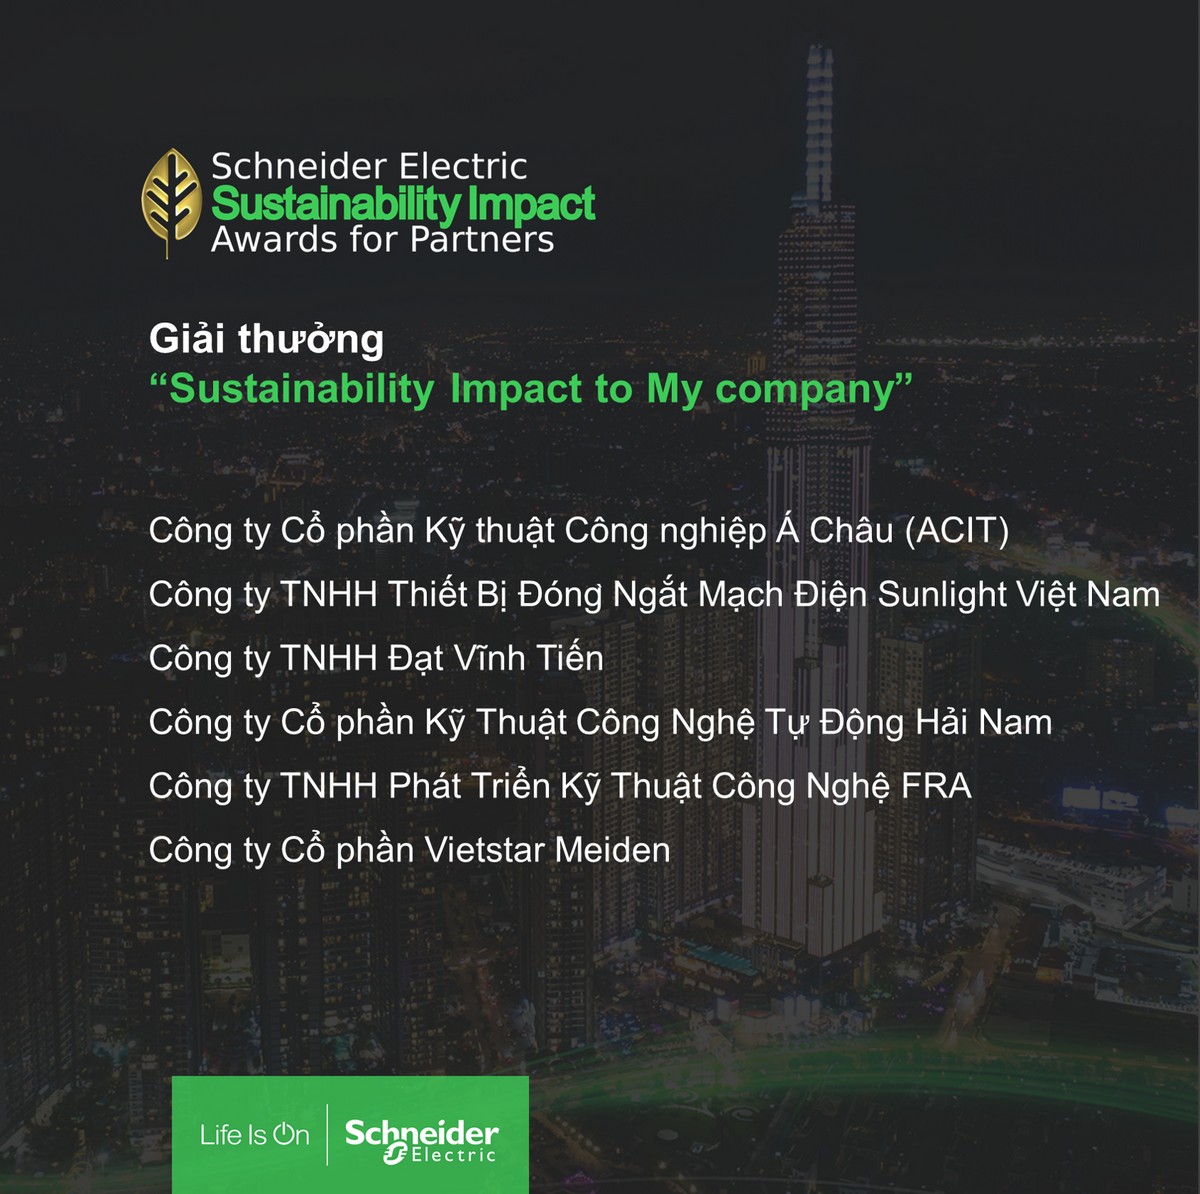 Schneider Electric vinh danh 11 đối tác đổi mới sáng tạo vì Việt Nam bền vững